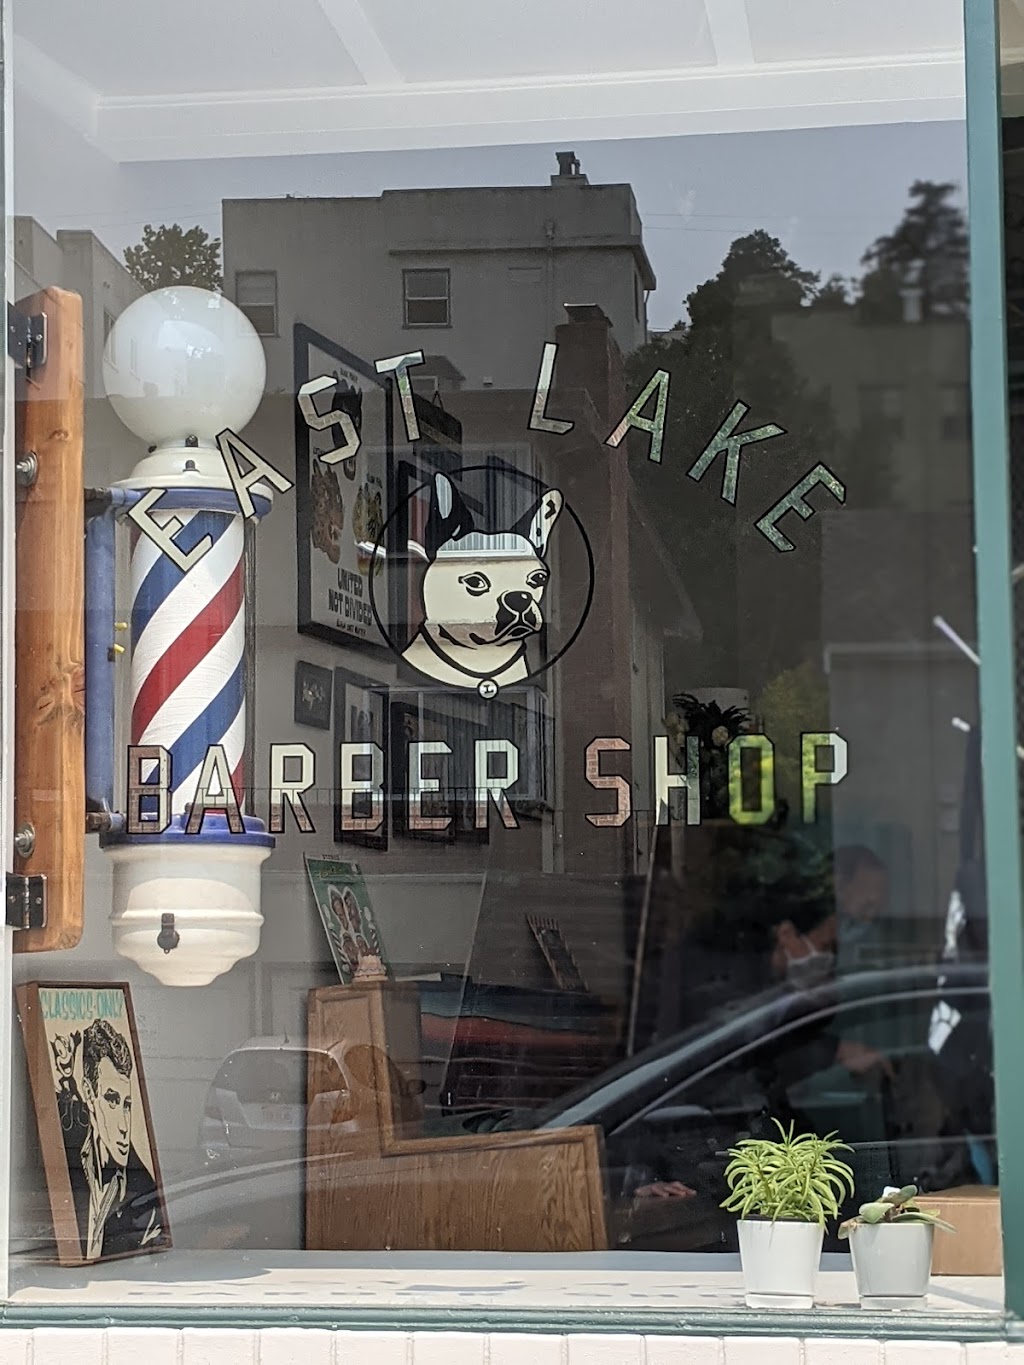 East Lake Barber Shop | 2345 Park Blvd, Oakland, CA 94606 | Phone: (510) 214-6754